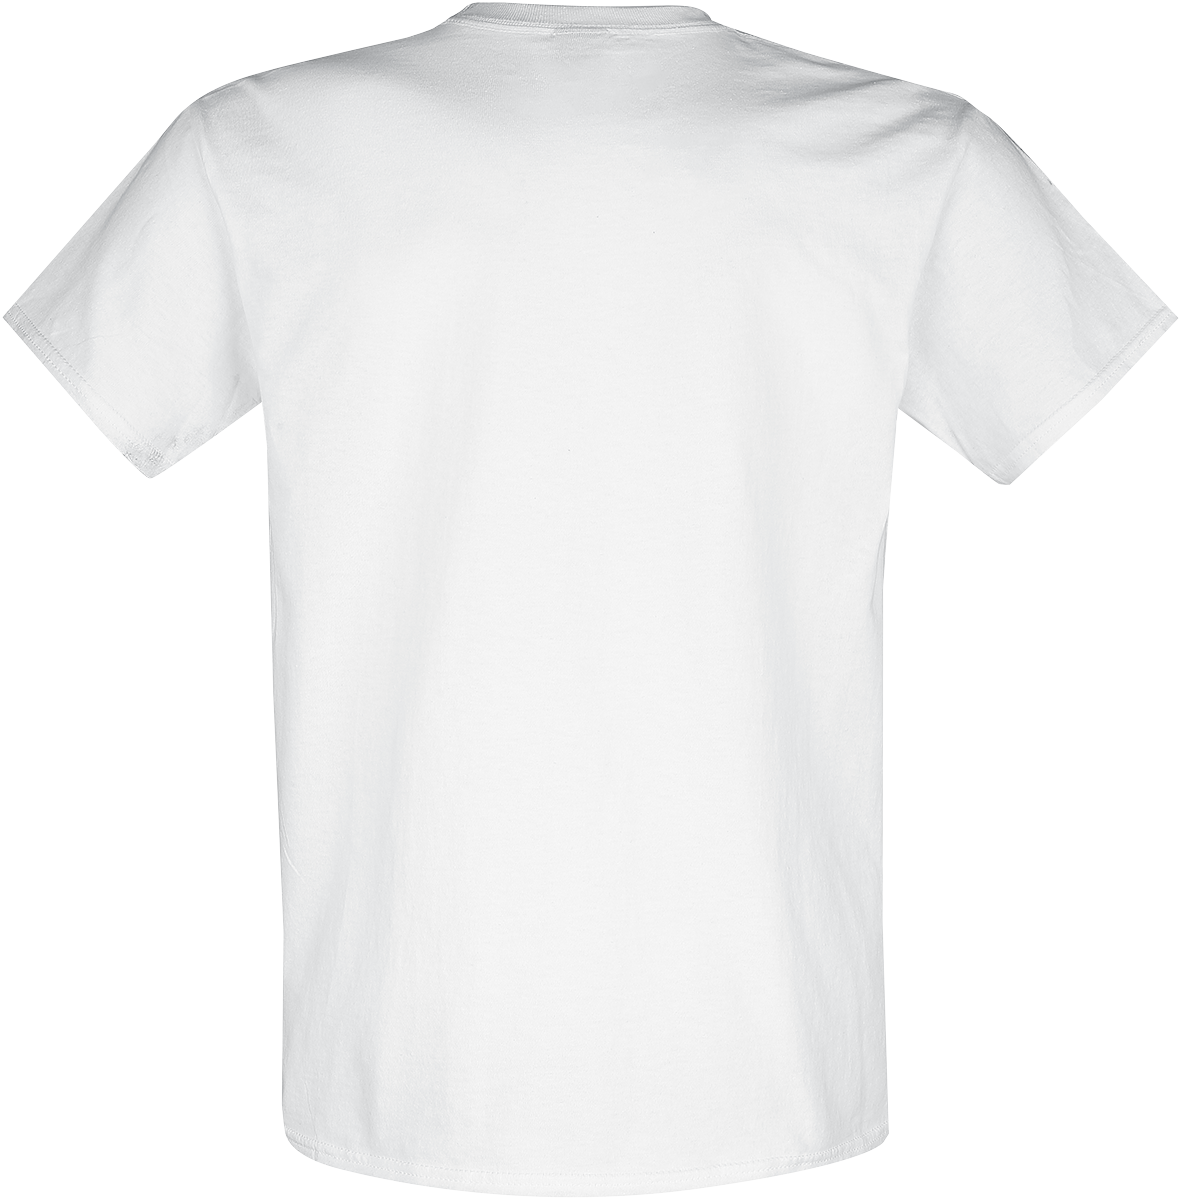 Artikel klicken und genauer betrachten! - Offizielles Merchandise bei EMP Motörhead Giant Warpig T-Shirt für Herren in den Größen M, L, XL verfügbar.Details:Farbe: weißMuster: UniHauptmaterial: 100% BaumwollePassform: RegularÄrmelform: Normaler ÄrmelÄrmellänge: Kurzer ÄrmelAusschnitt: RundhalsKragenform: Kragenlos | im Online Shop kaufen